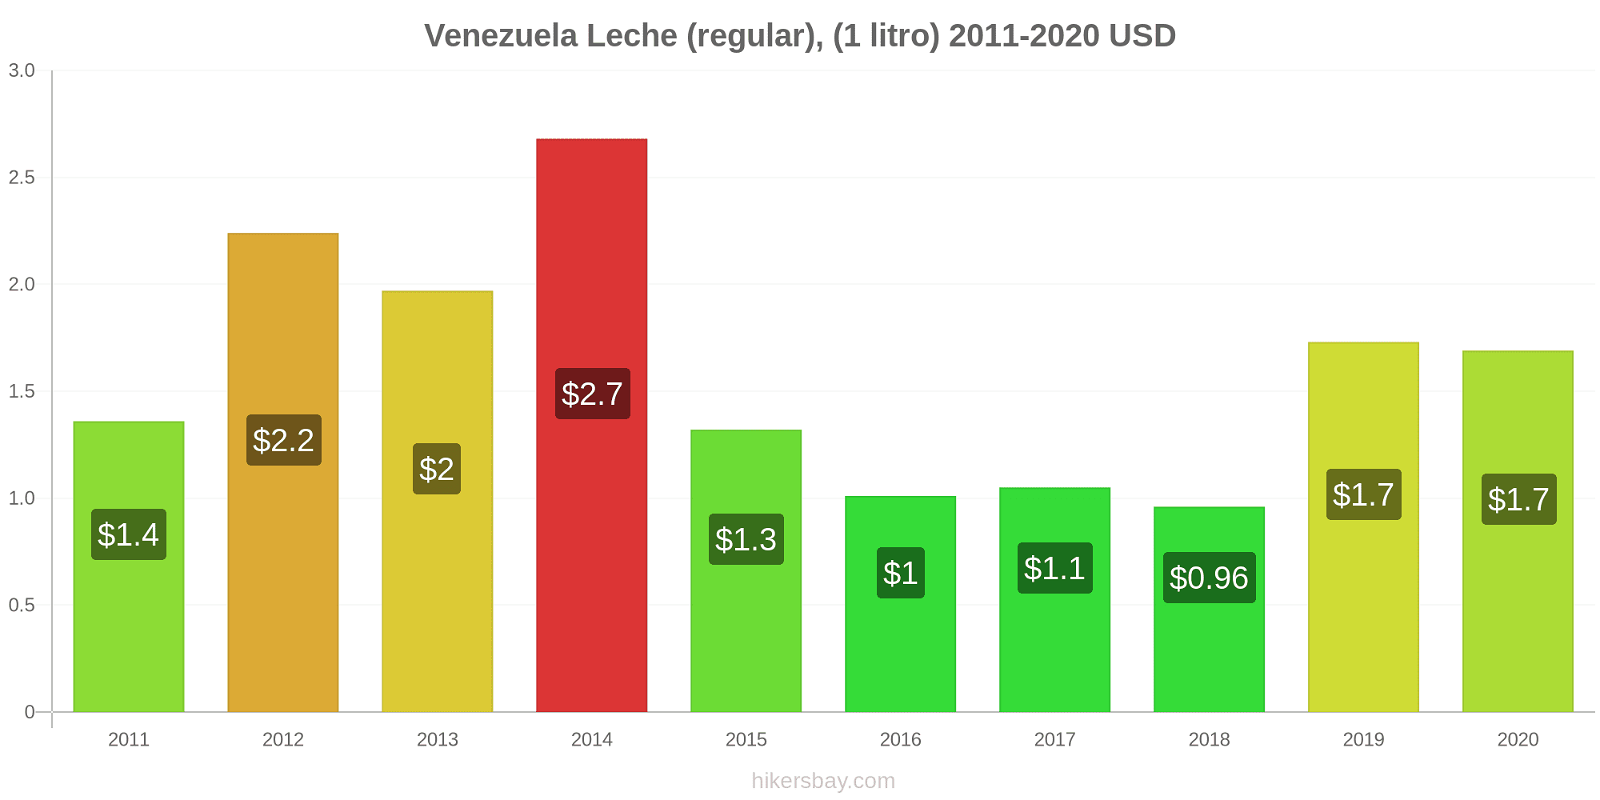 Venezuela cambios de precios Leche (Regular), (1 litro) hikersbay.com